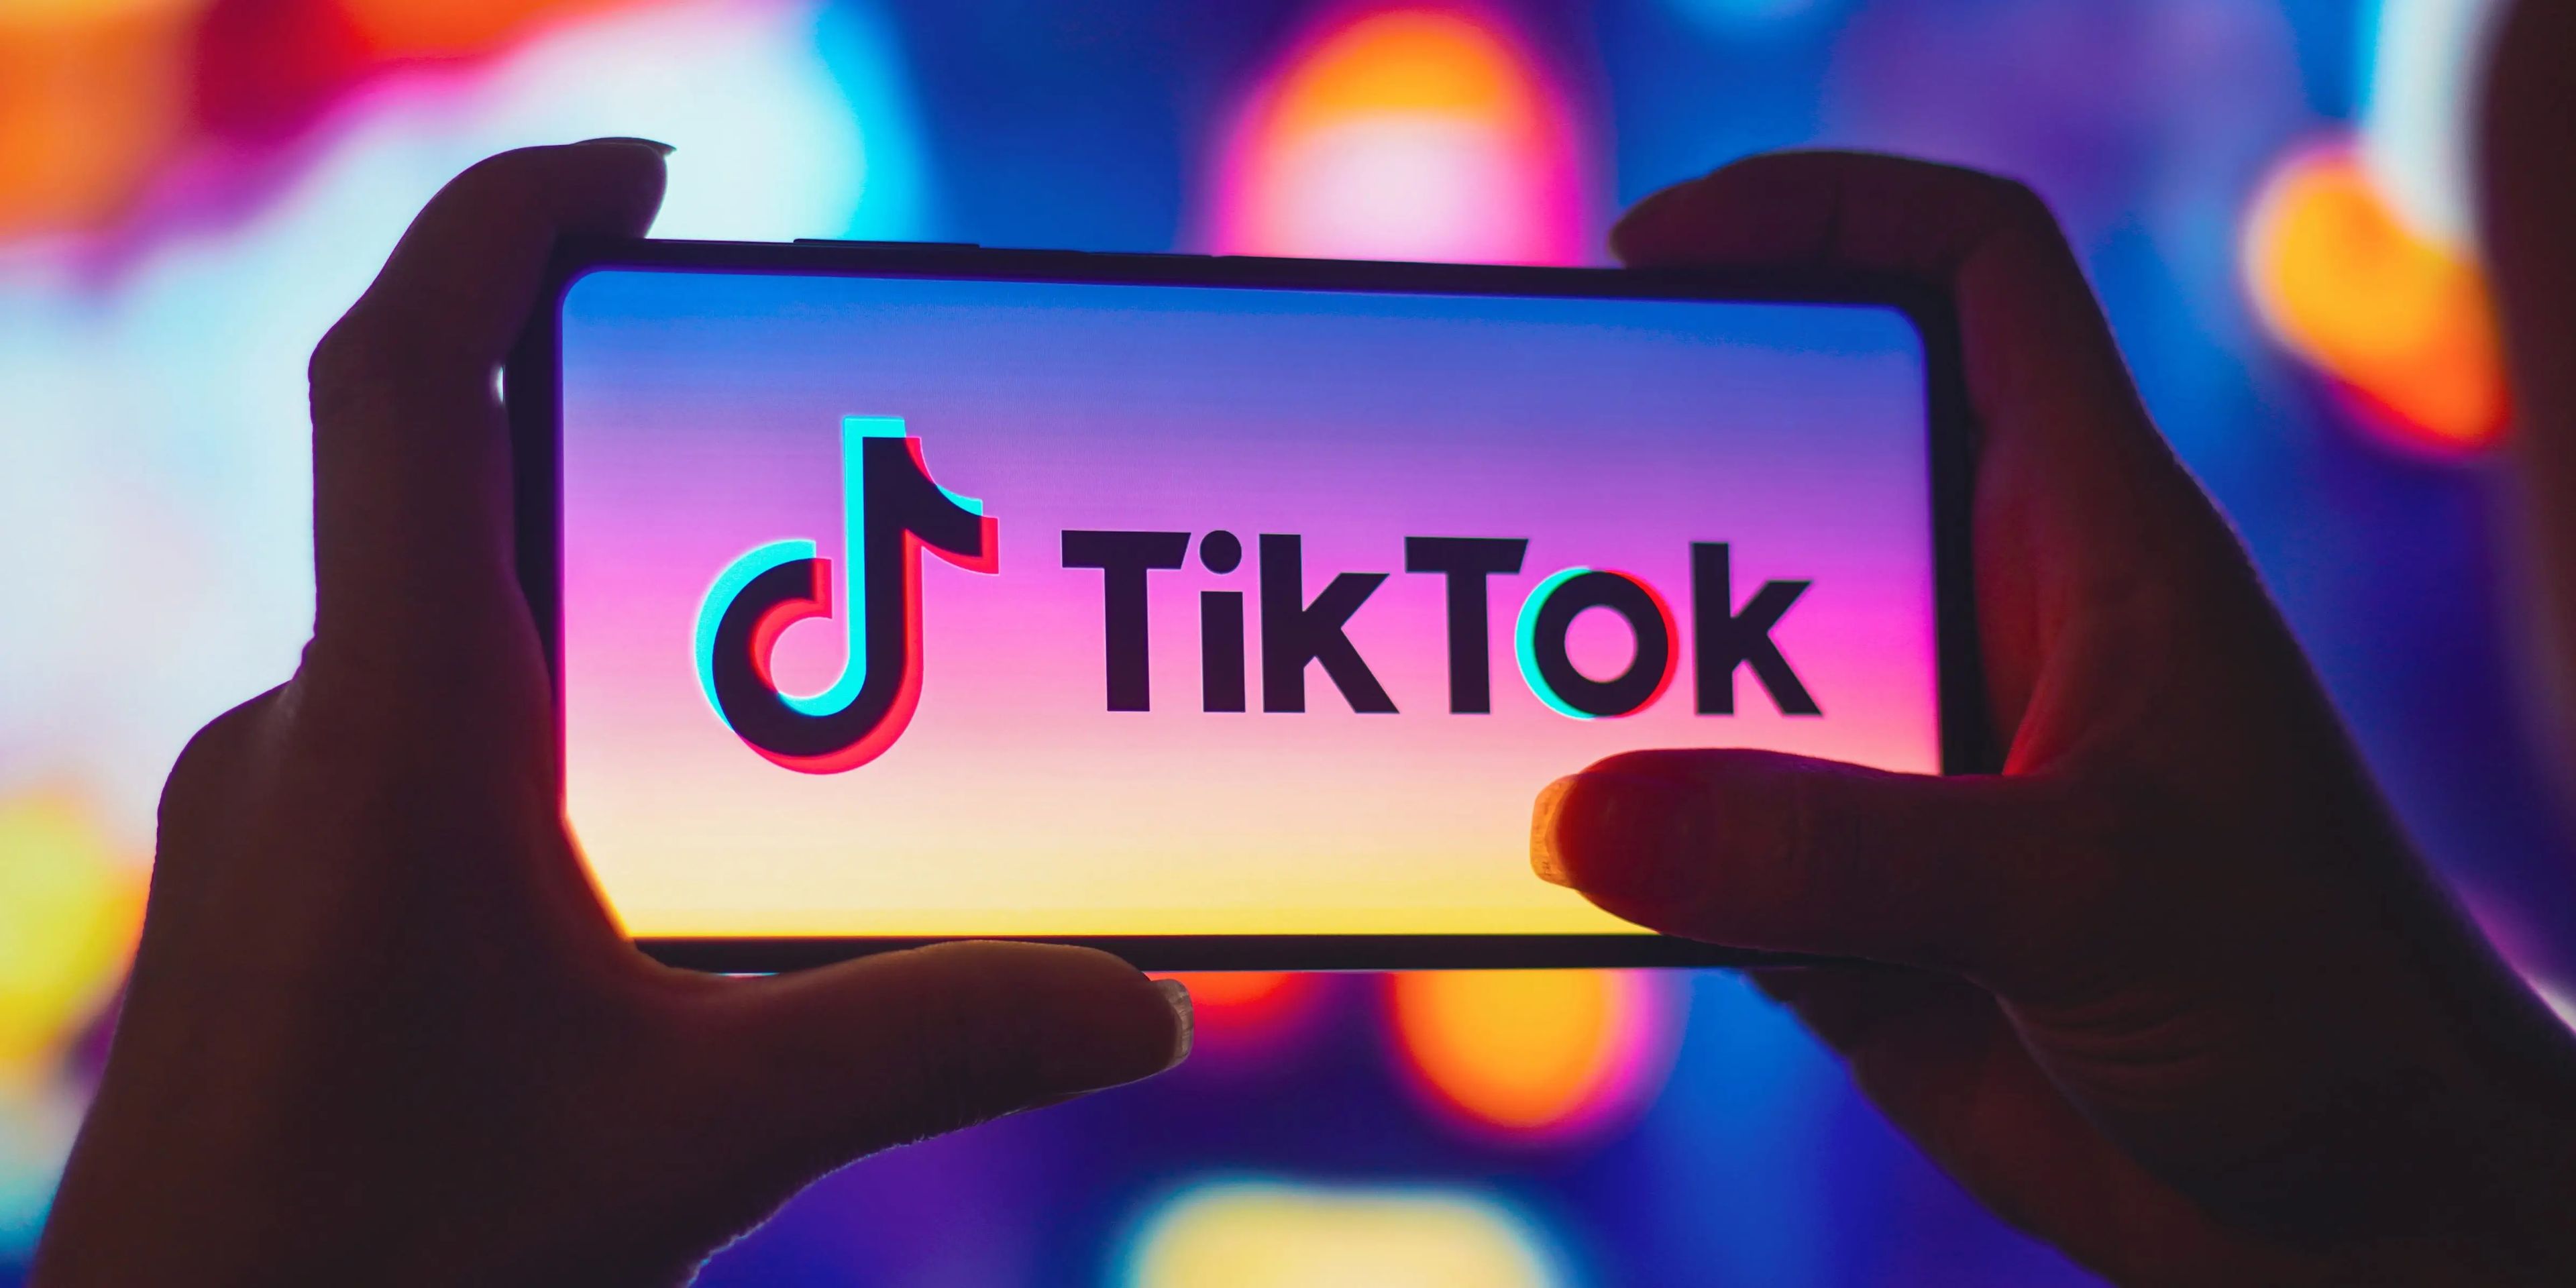 Los moderadores de contenidos contratados para revisar los vídeos de TikTok dijeron que se les mostró material sexualmente explícito de niños.